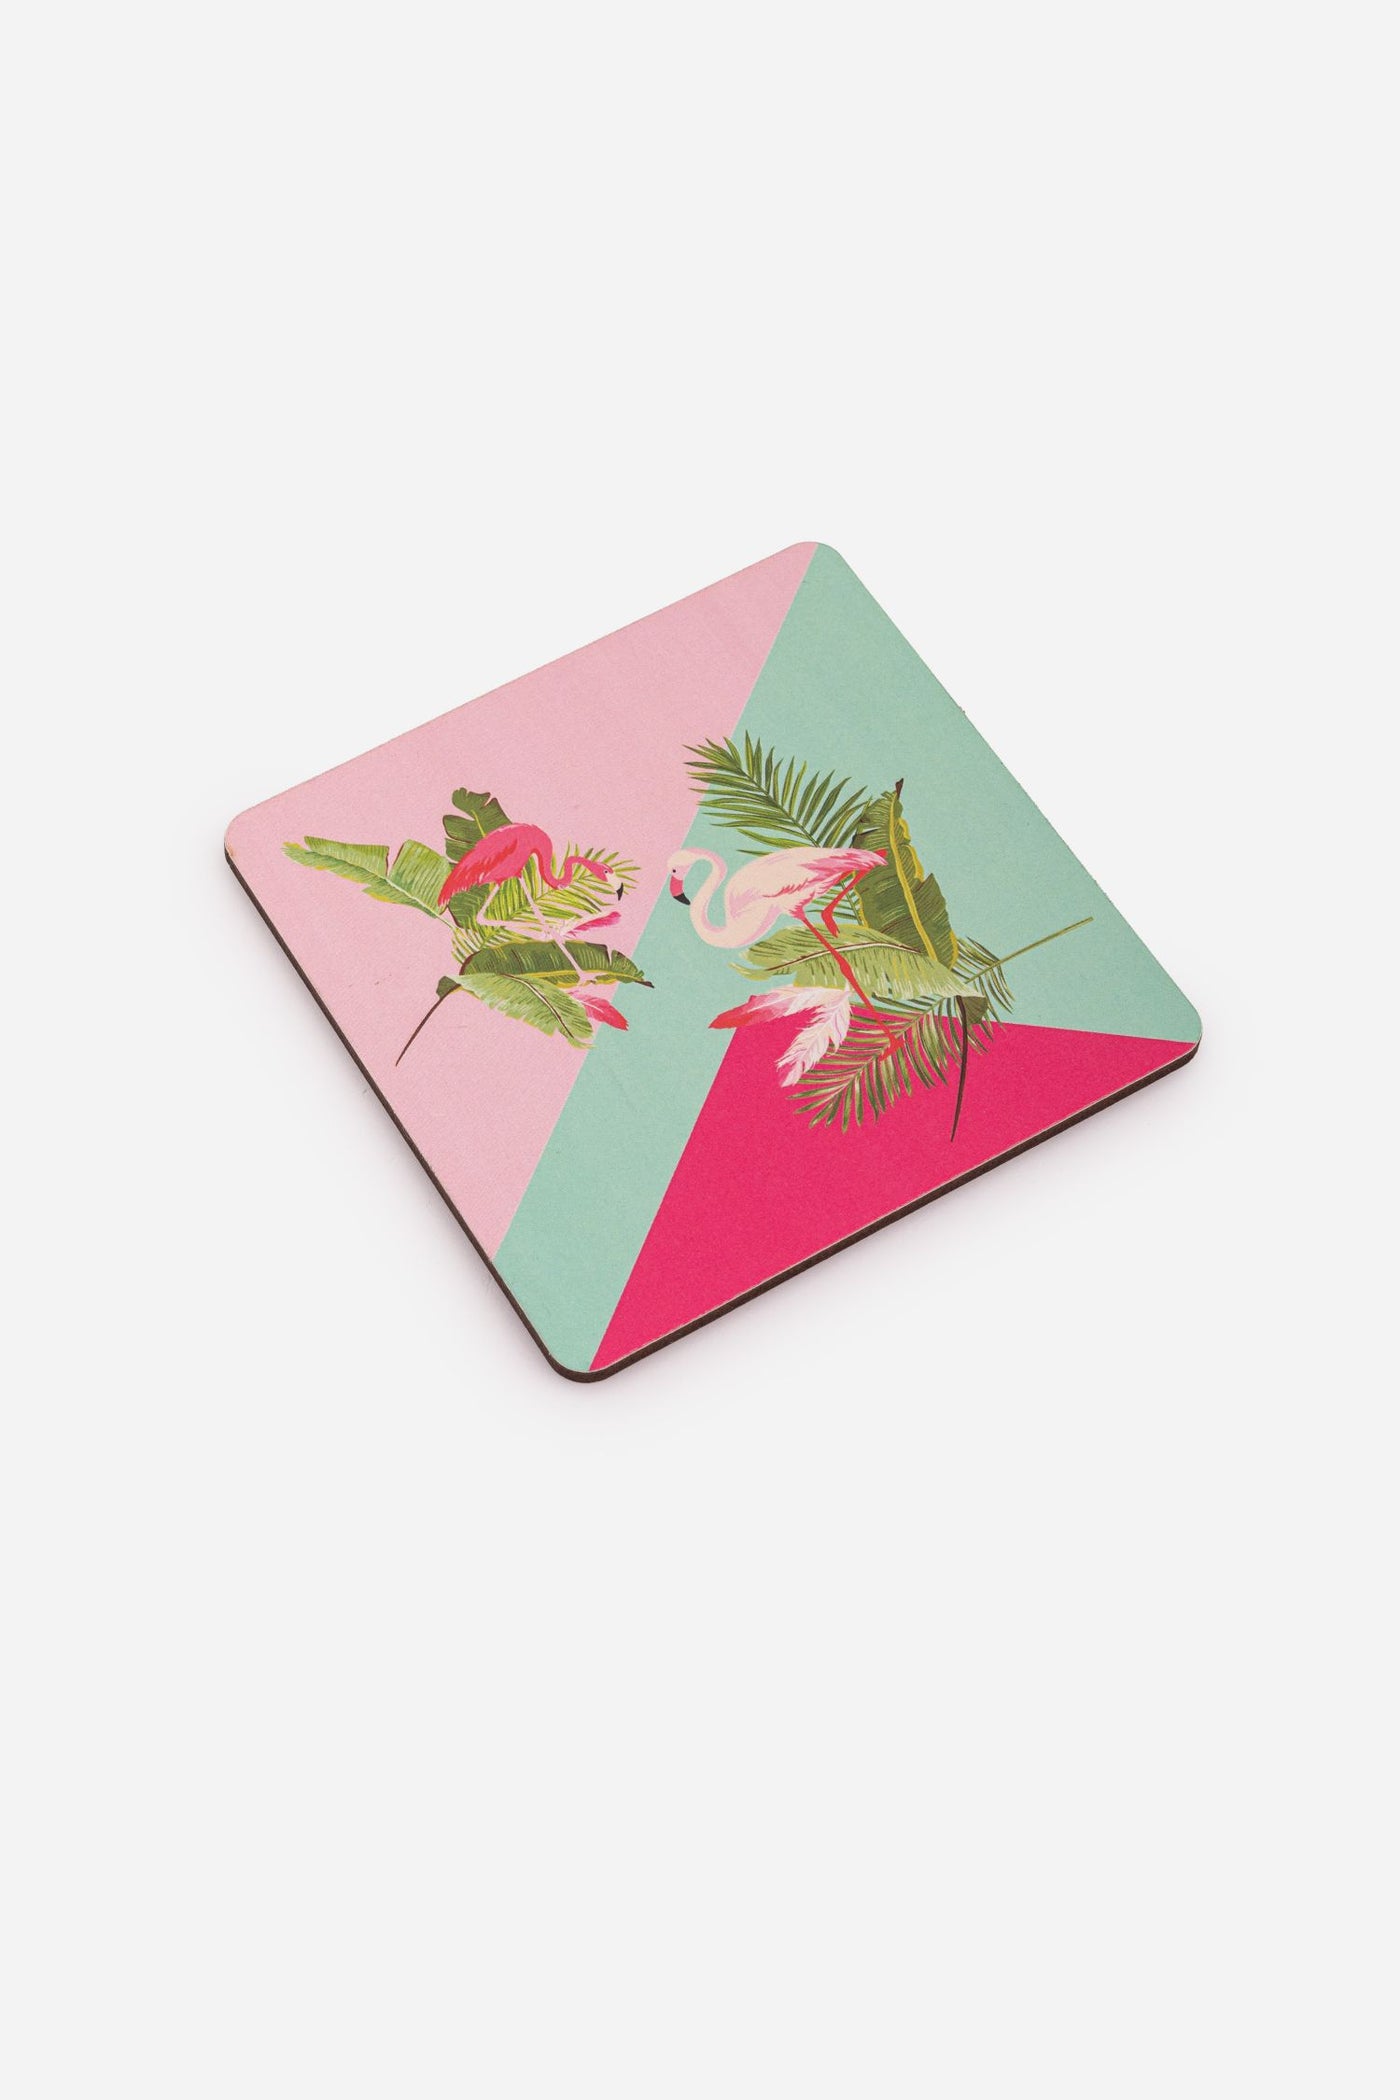 Multicolor Digital Print Wooden Coaster